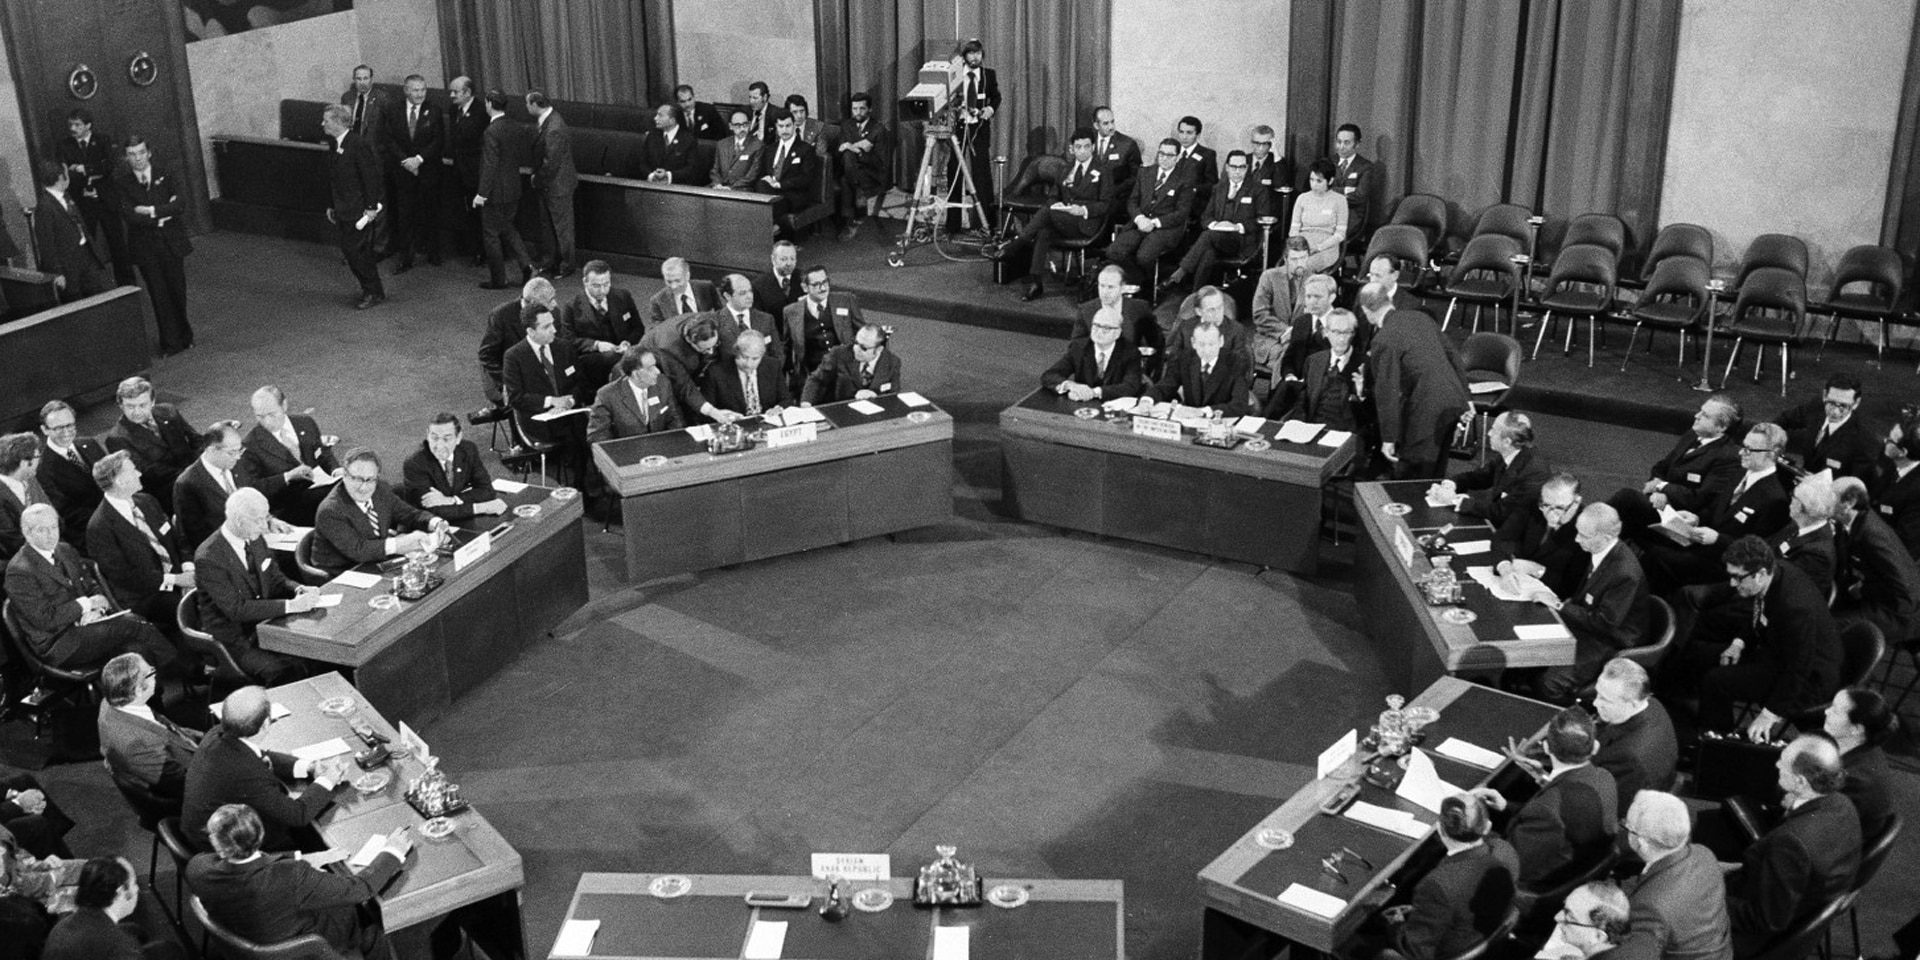 Fotografia in bianco e nero: sette tavoli sono disposti in cerchio in una sala conferenze, con dei signori seduti.